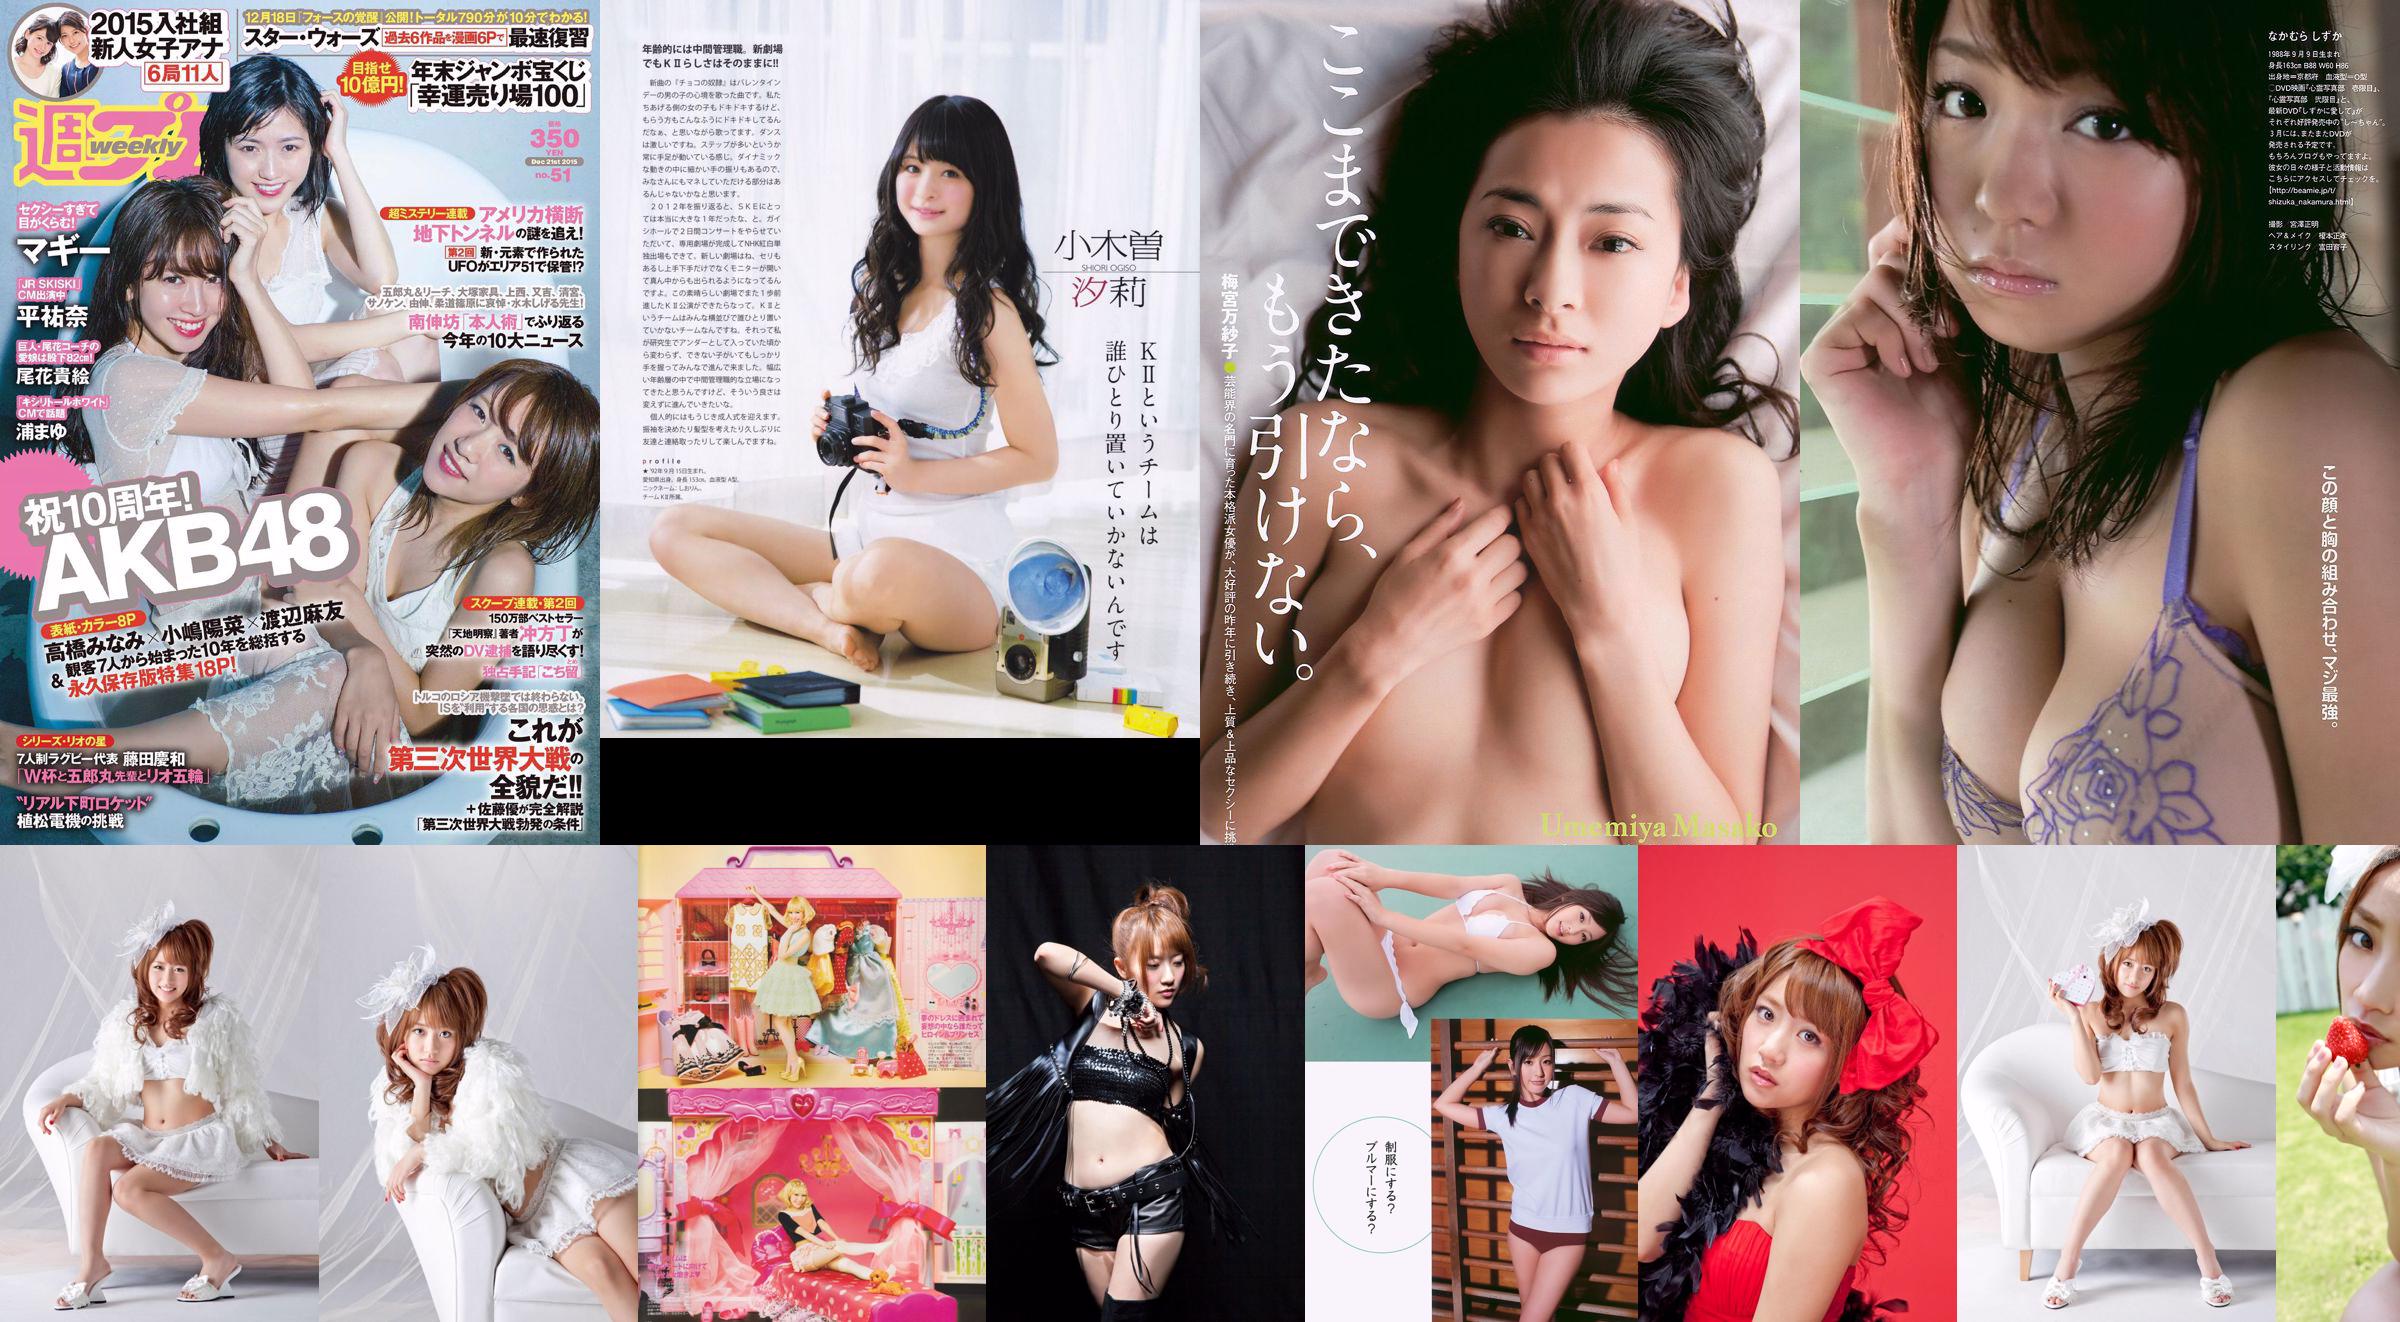 [Bomb Magazine] 2013 No.02 Takahashi Minami Matsui Jurina Kasai Tomomi Kitahara Riehi Photo magazine No.d3d3ed Pagina 1